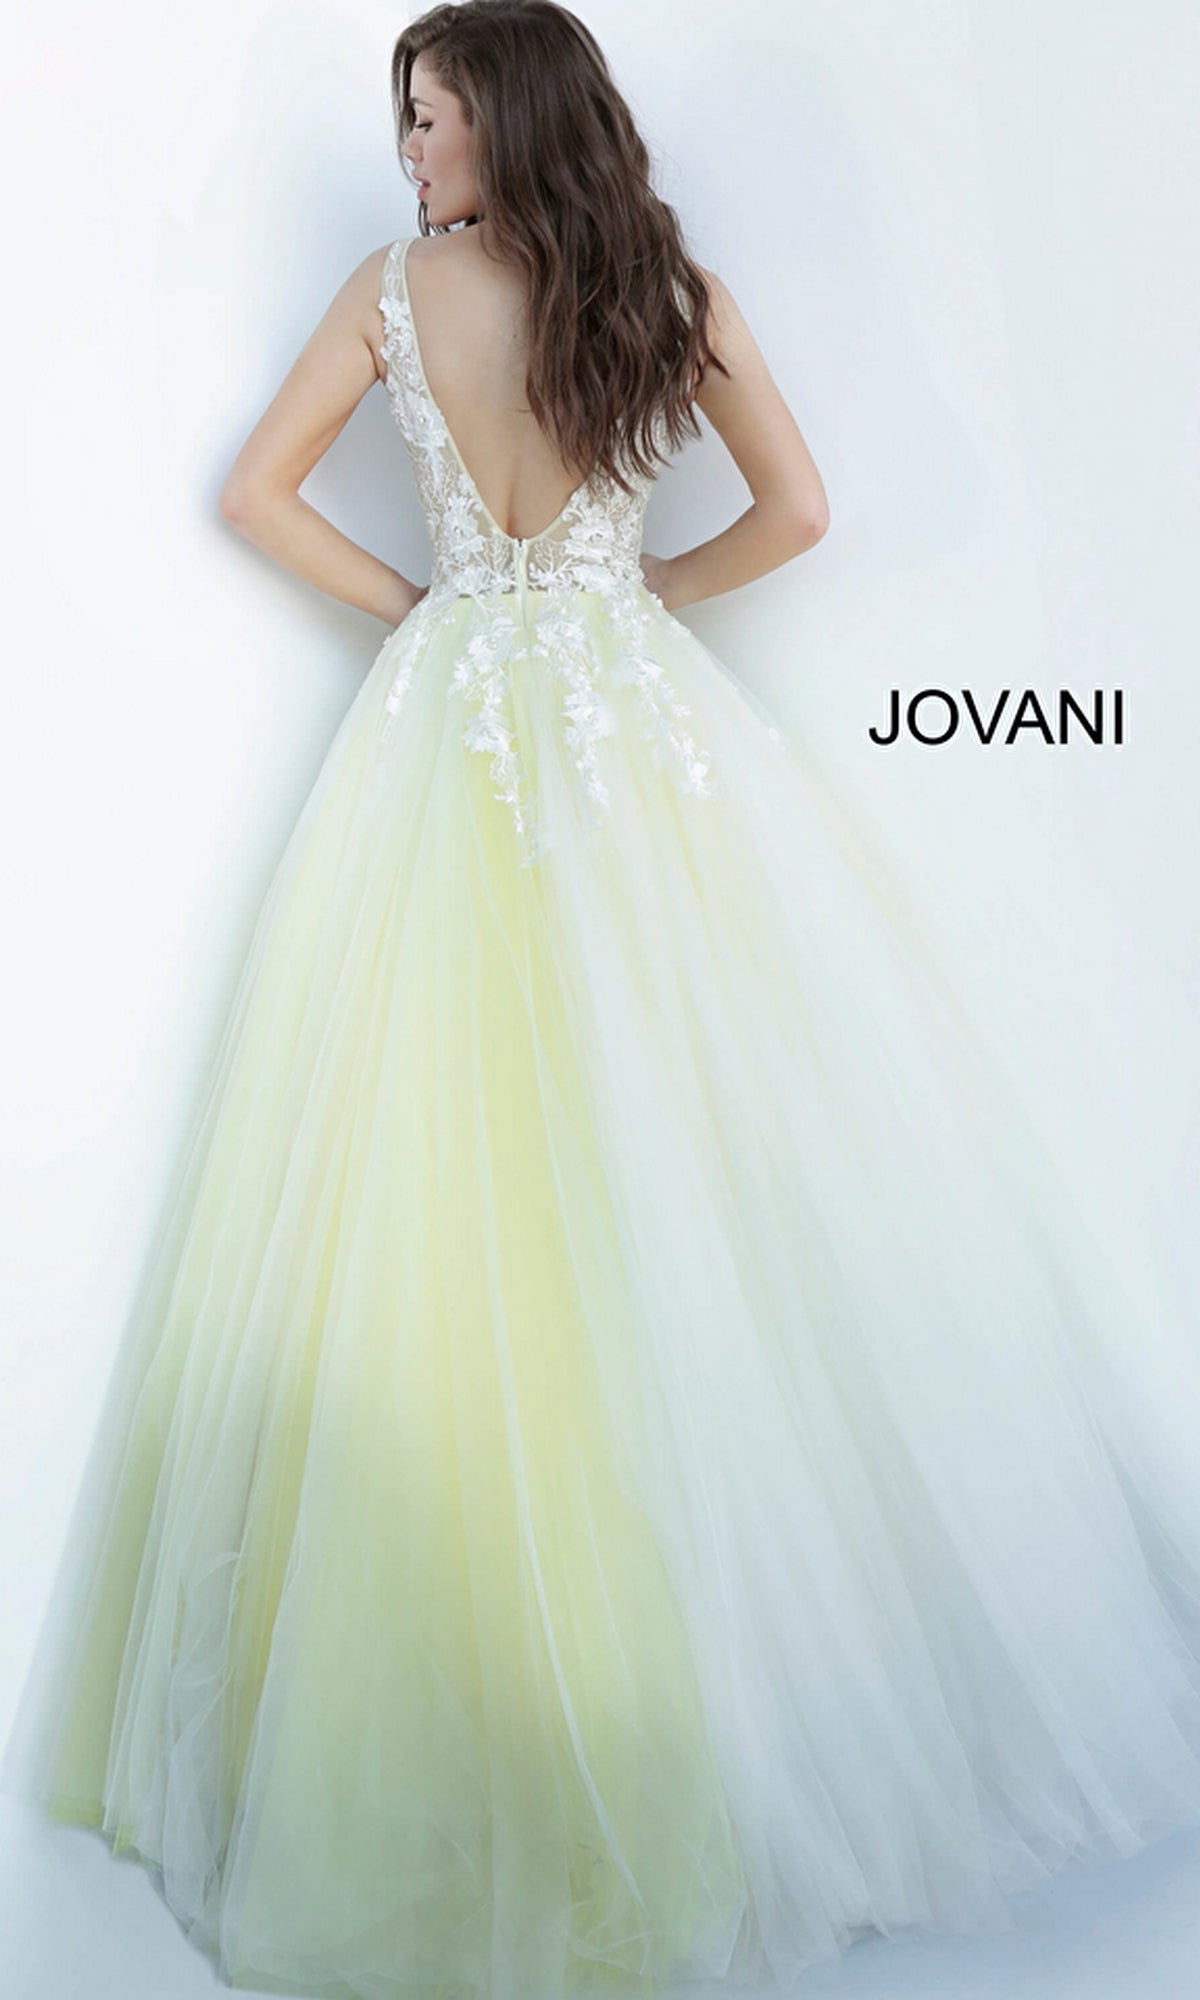 Jovani 02840 Sheer Floral Applique V Neck Ballgown Prom Dress